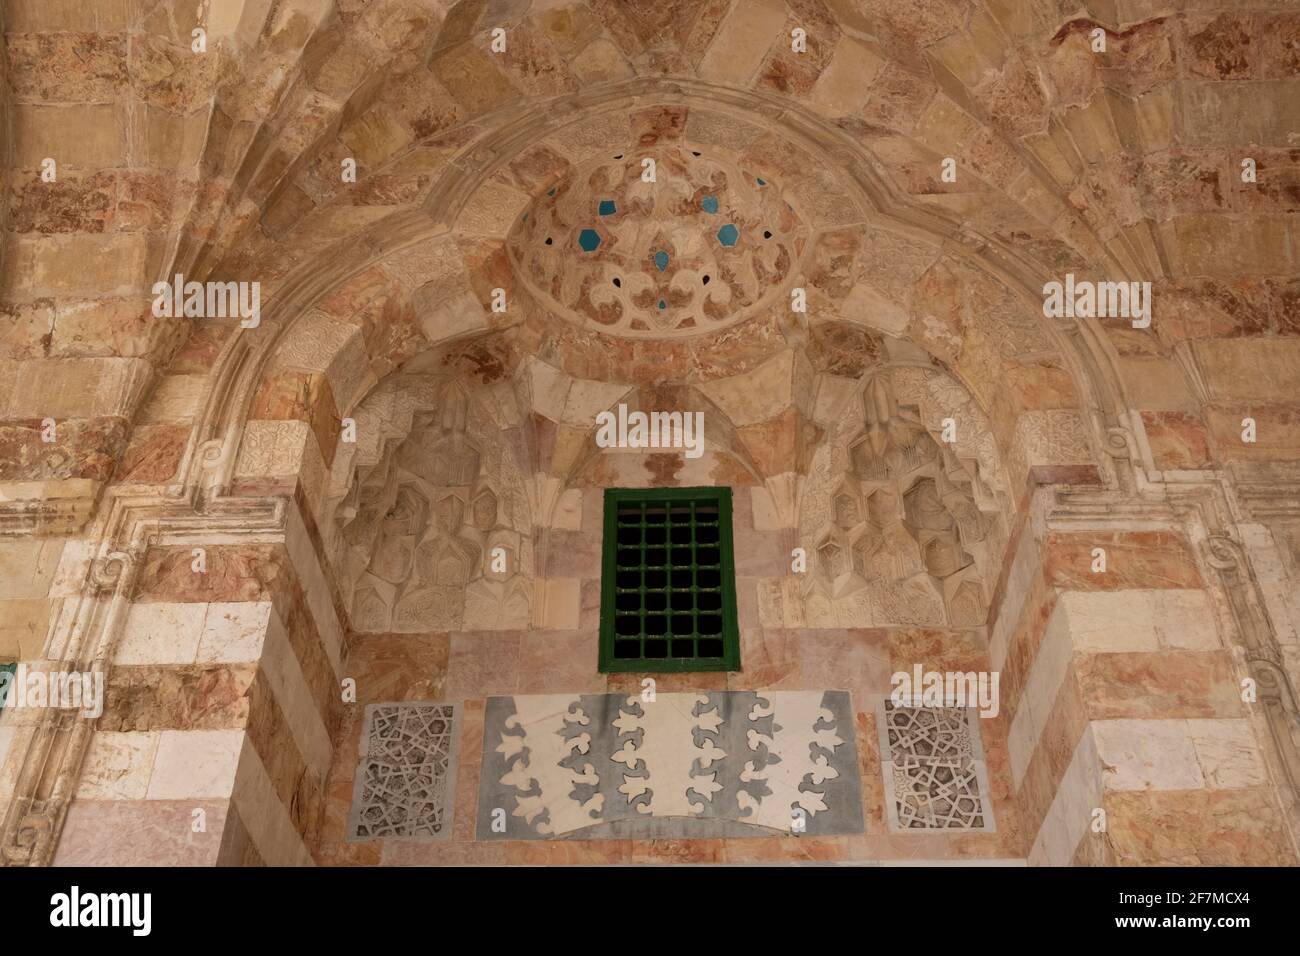 Ornamento in stile Mamluk all'ingresso della Madrasa al-Ashrafiyya una struttura islamica costruita nel 1480-1482 dal sultano Mamluk al-Ashraf Qaytbay sul lato occidentale del Monte del Tempio conosciuto come il Santuario Nobile e ai musulmani come l'Haram esh-Sharif nella città vecchia di Gerusalemme Est Israele Foto Stock